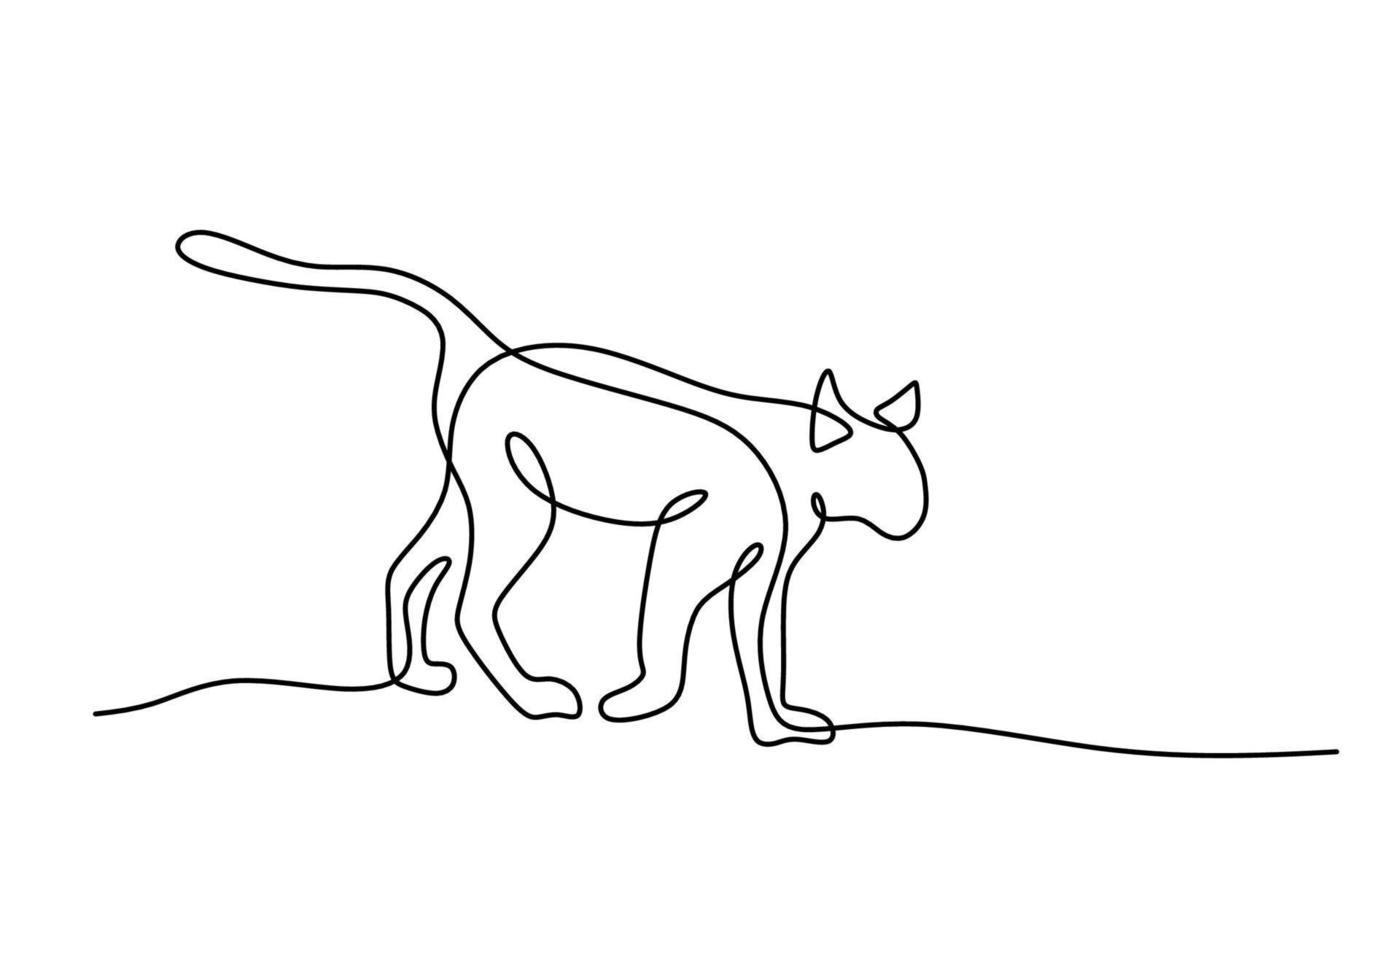 ett kontinuerlig enda linje av gående katt på vit bakgrund. vektor